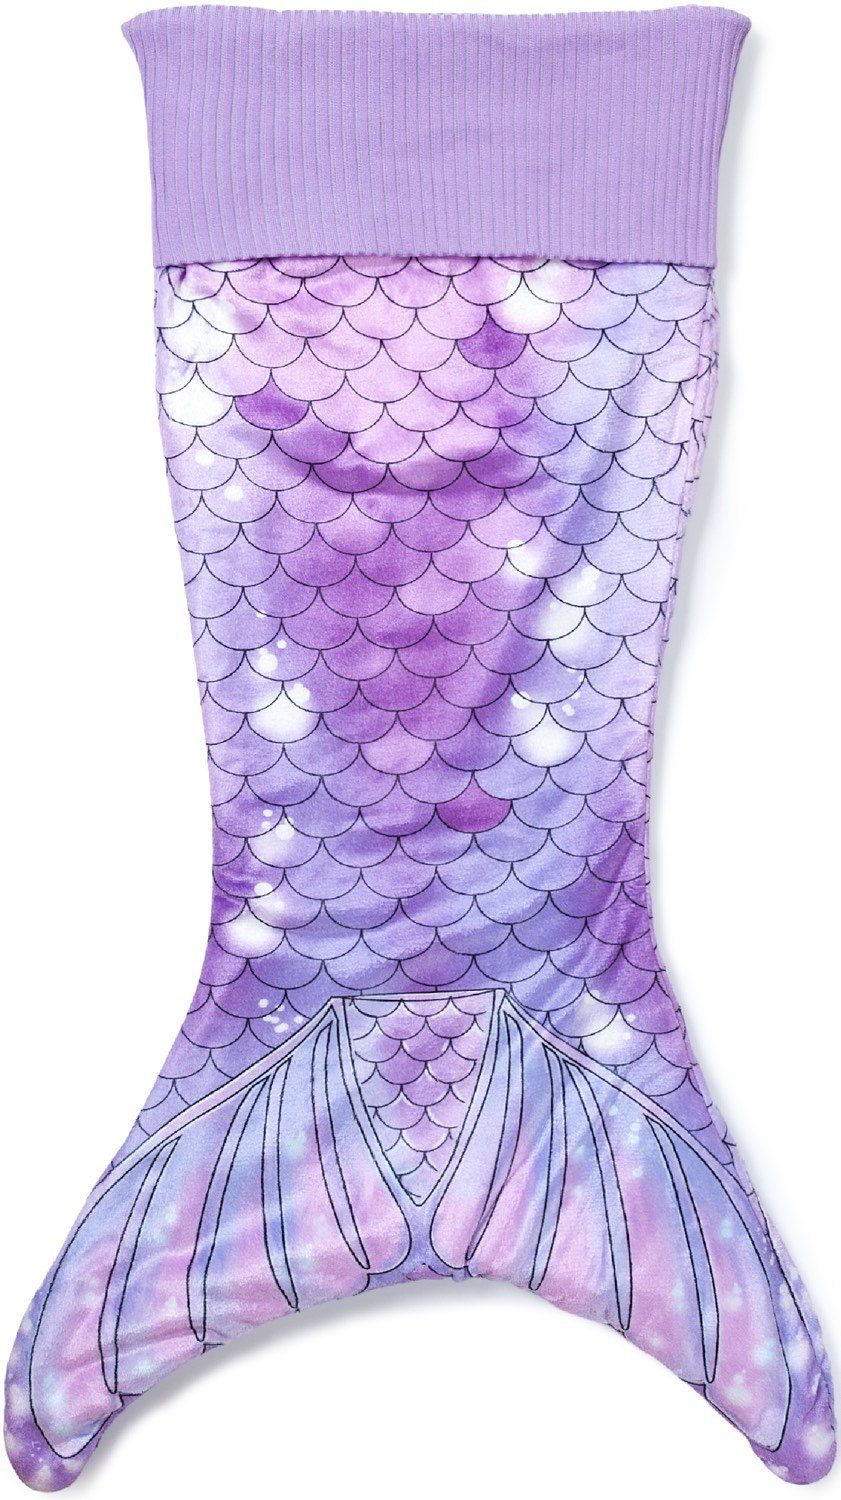 Corimori Deckenschlafsack Meerjungfrau flauschige Kuschel-Decke, Schlafsack (Packung), Einheitsgröße, Mermaid, Meerjungfrauenflosse für Kinder, Mädchen